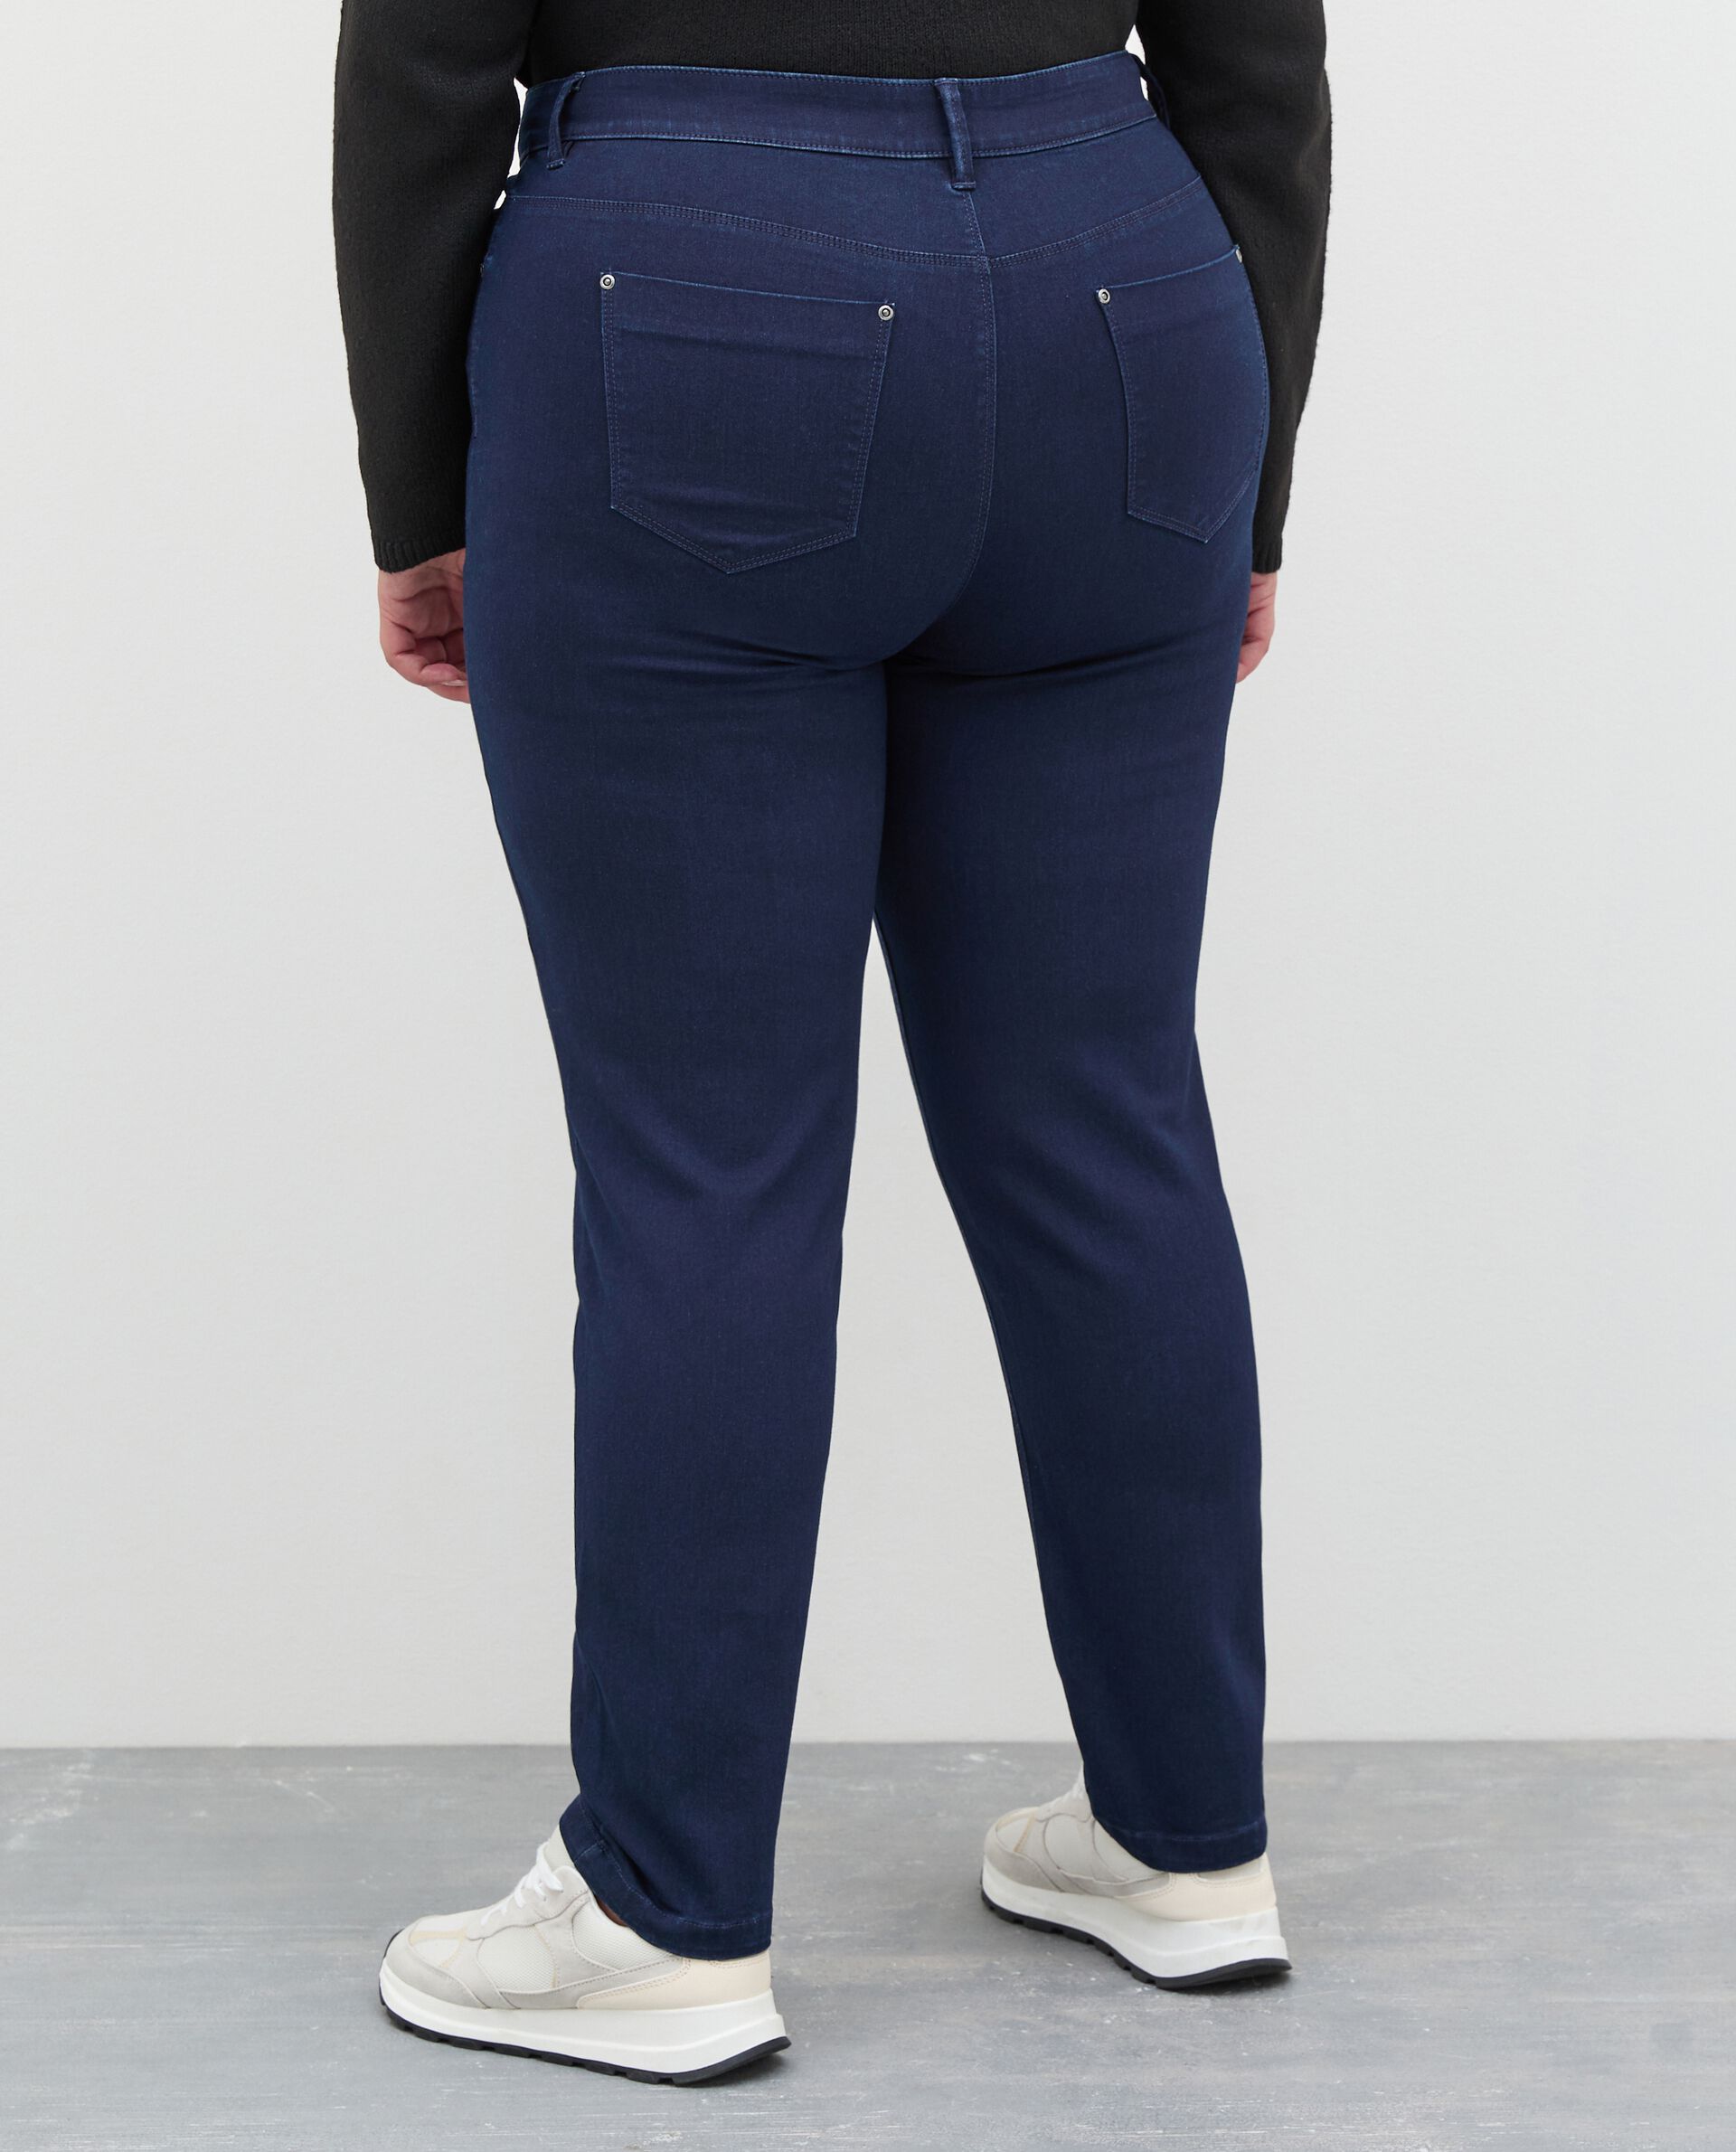 Jeans curvy elasticizzati donna